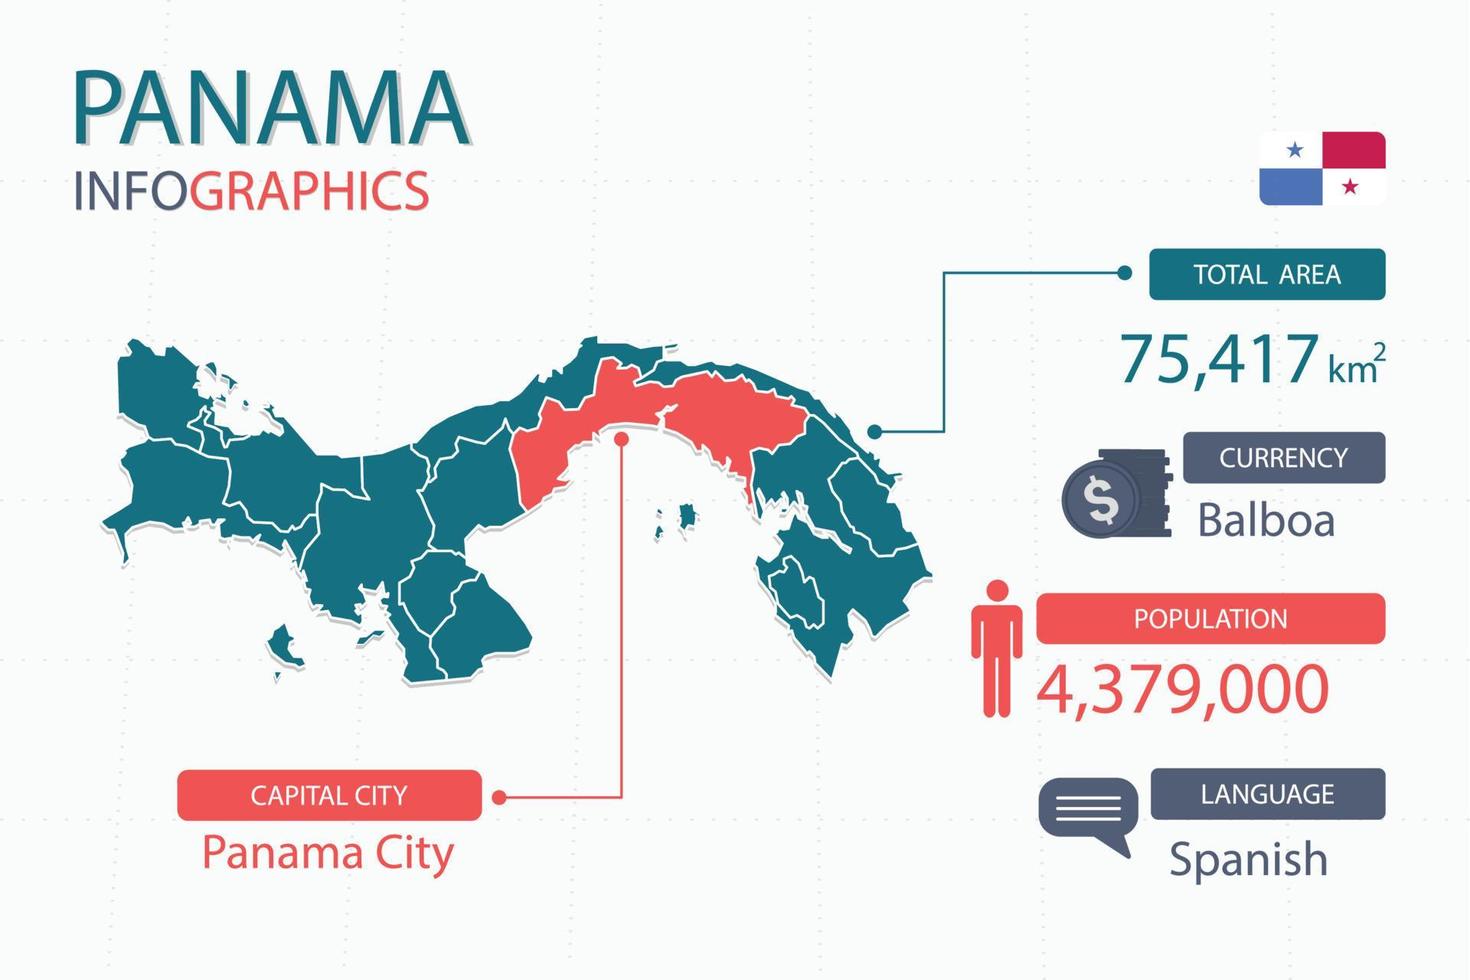 Panama kaart infographic elementen met scheiden van rubriek is totaal gebieden, munteenheid, allemaal populaties, taal en de hoofdstad stad in deze land. vector